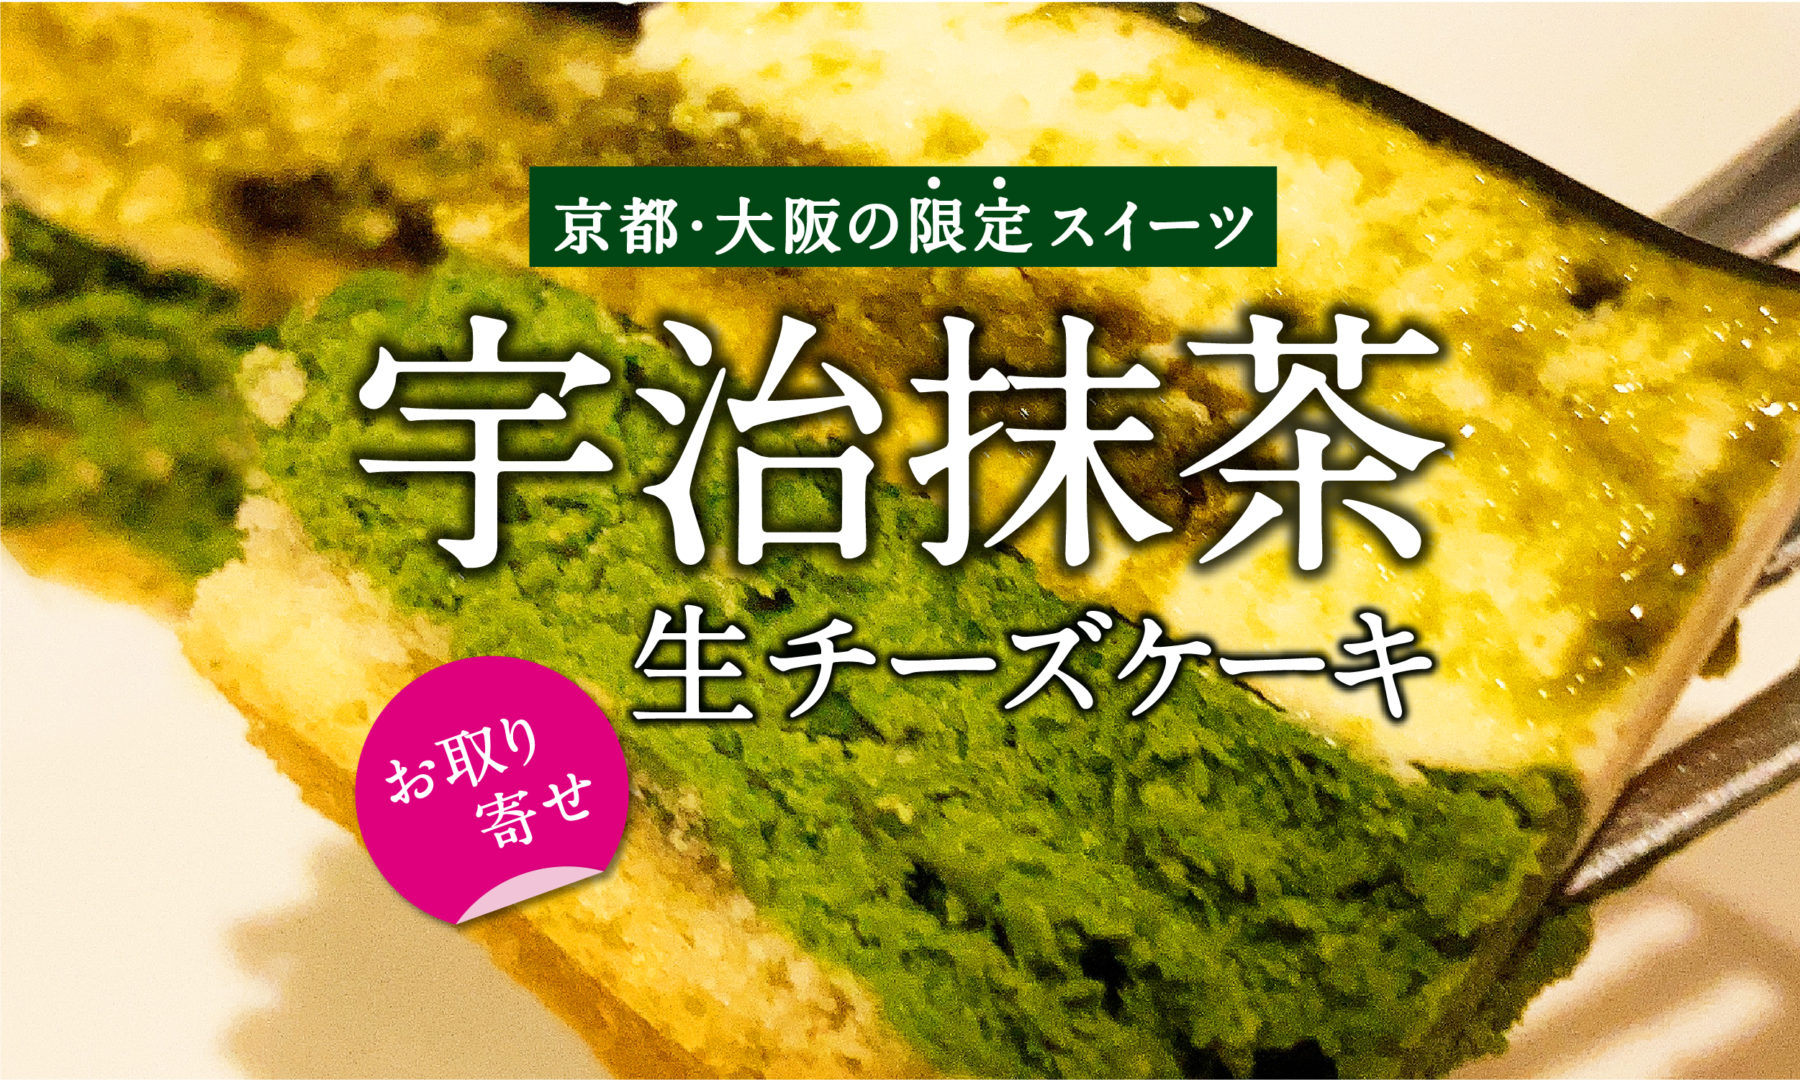 京都大阪の限定スイーツ 京都宇治抹茶の生チーズケーキ 食べてみた